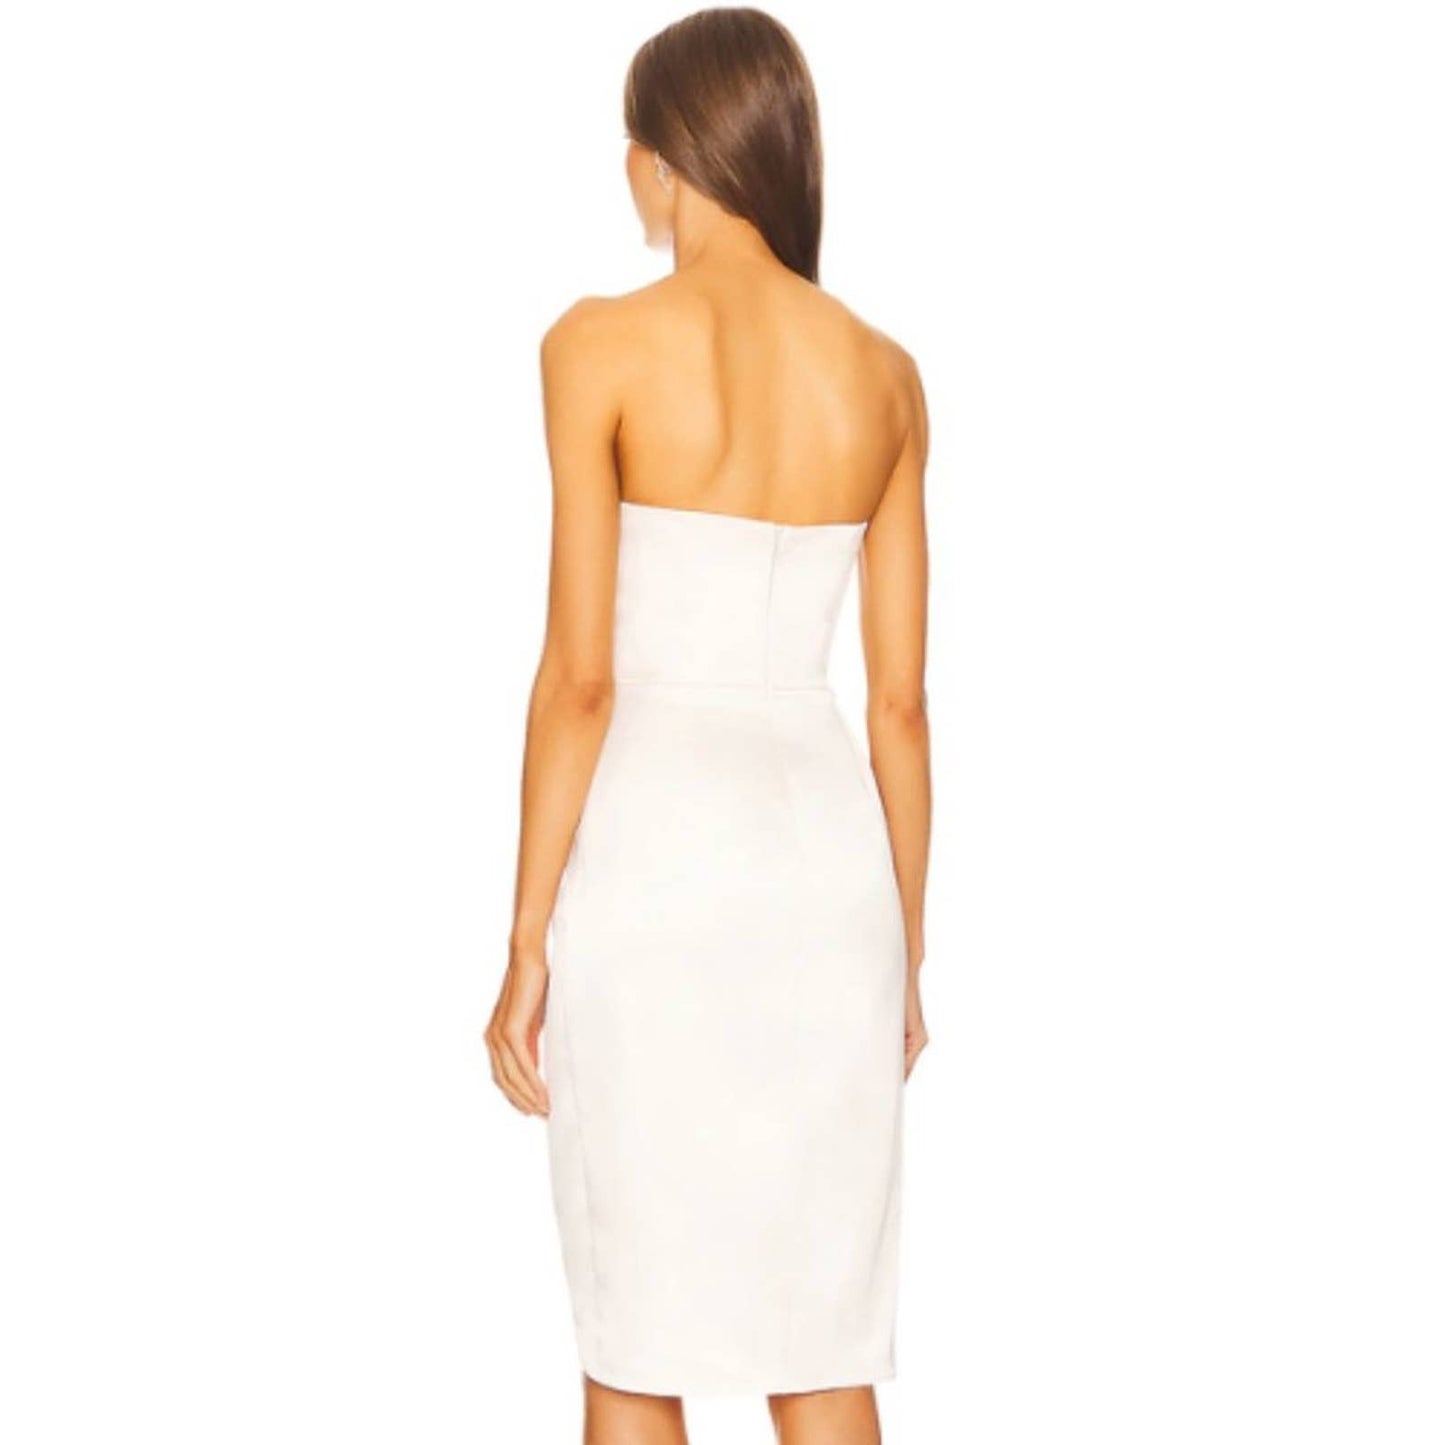 Michael Costello x REVOLVE Sara Midi Dress in Off White NWT Size Small